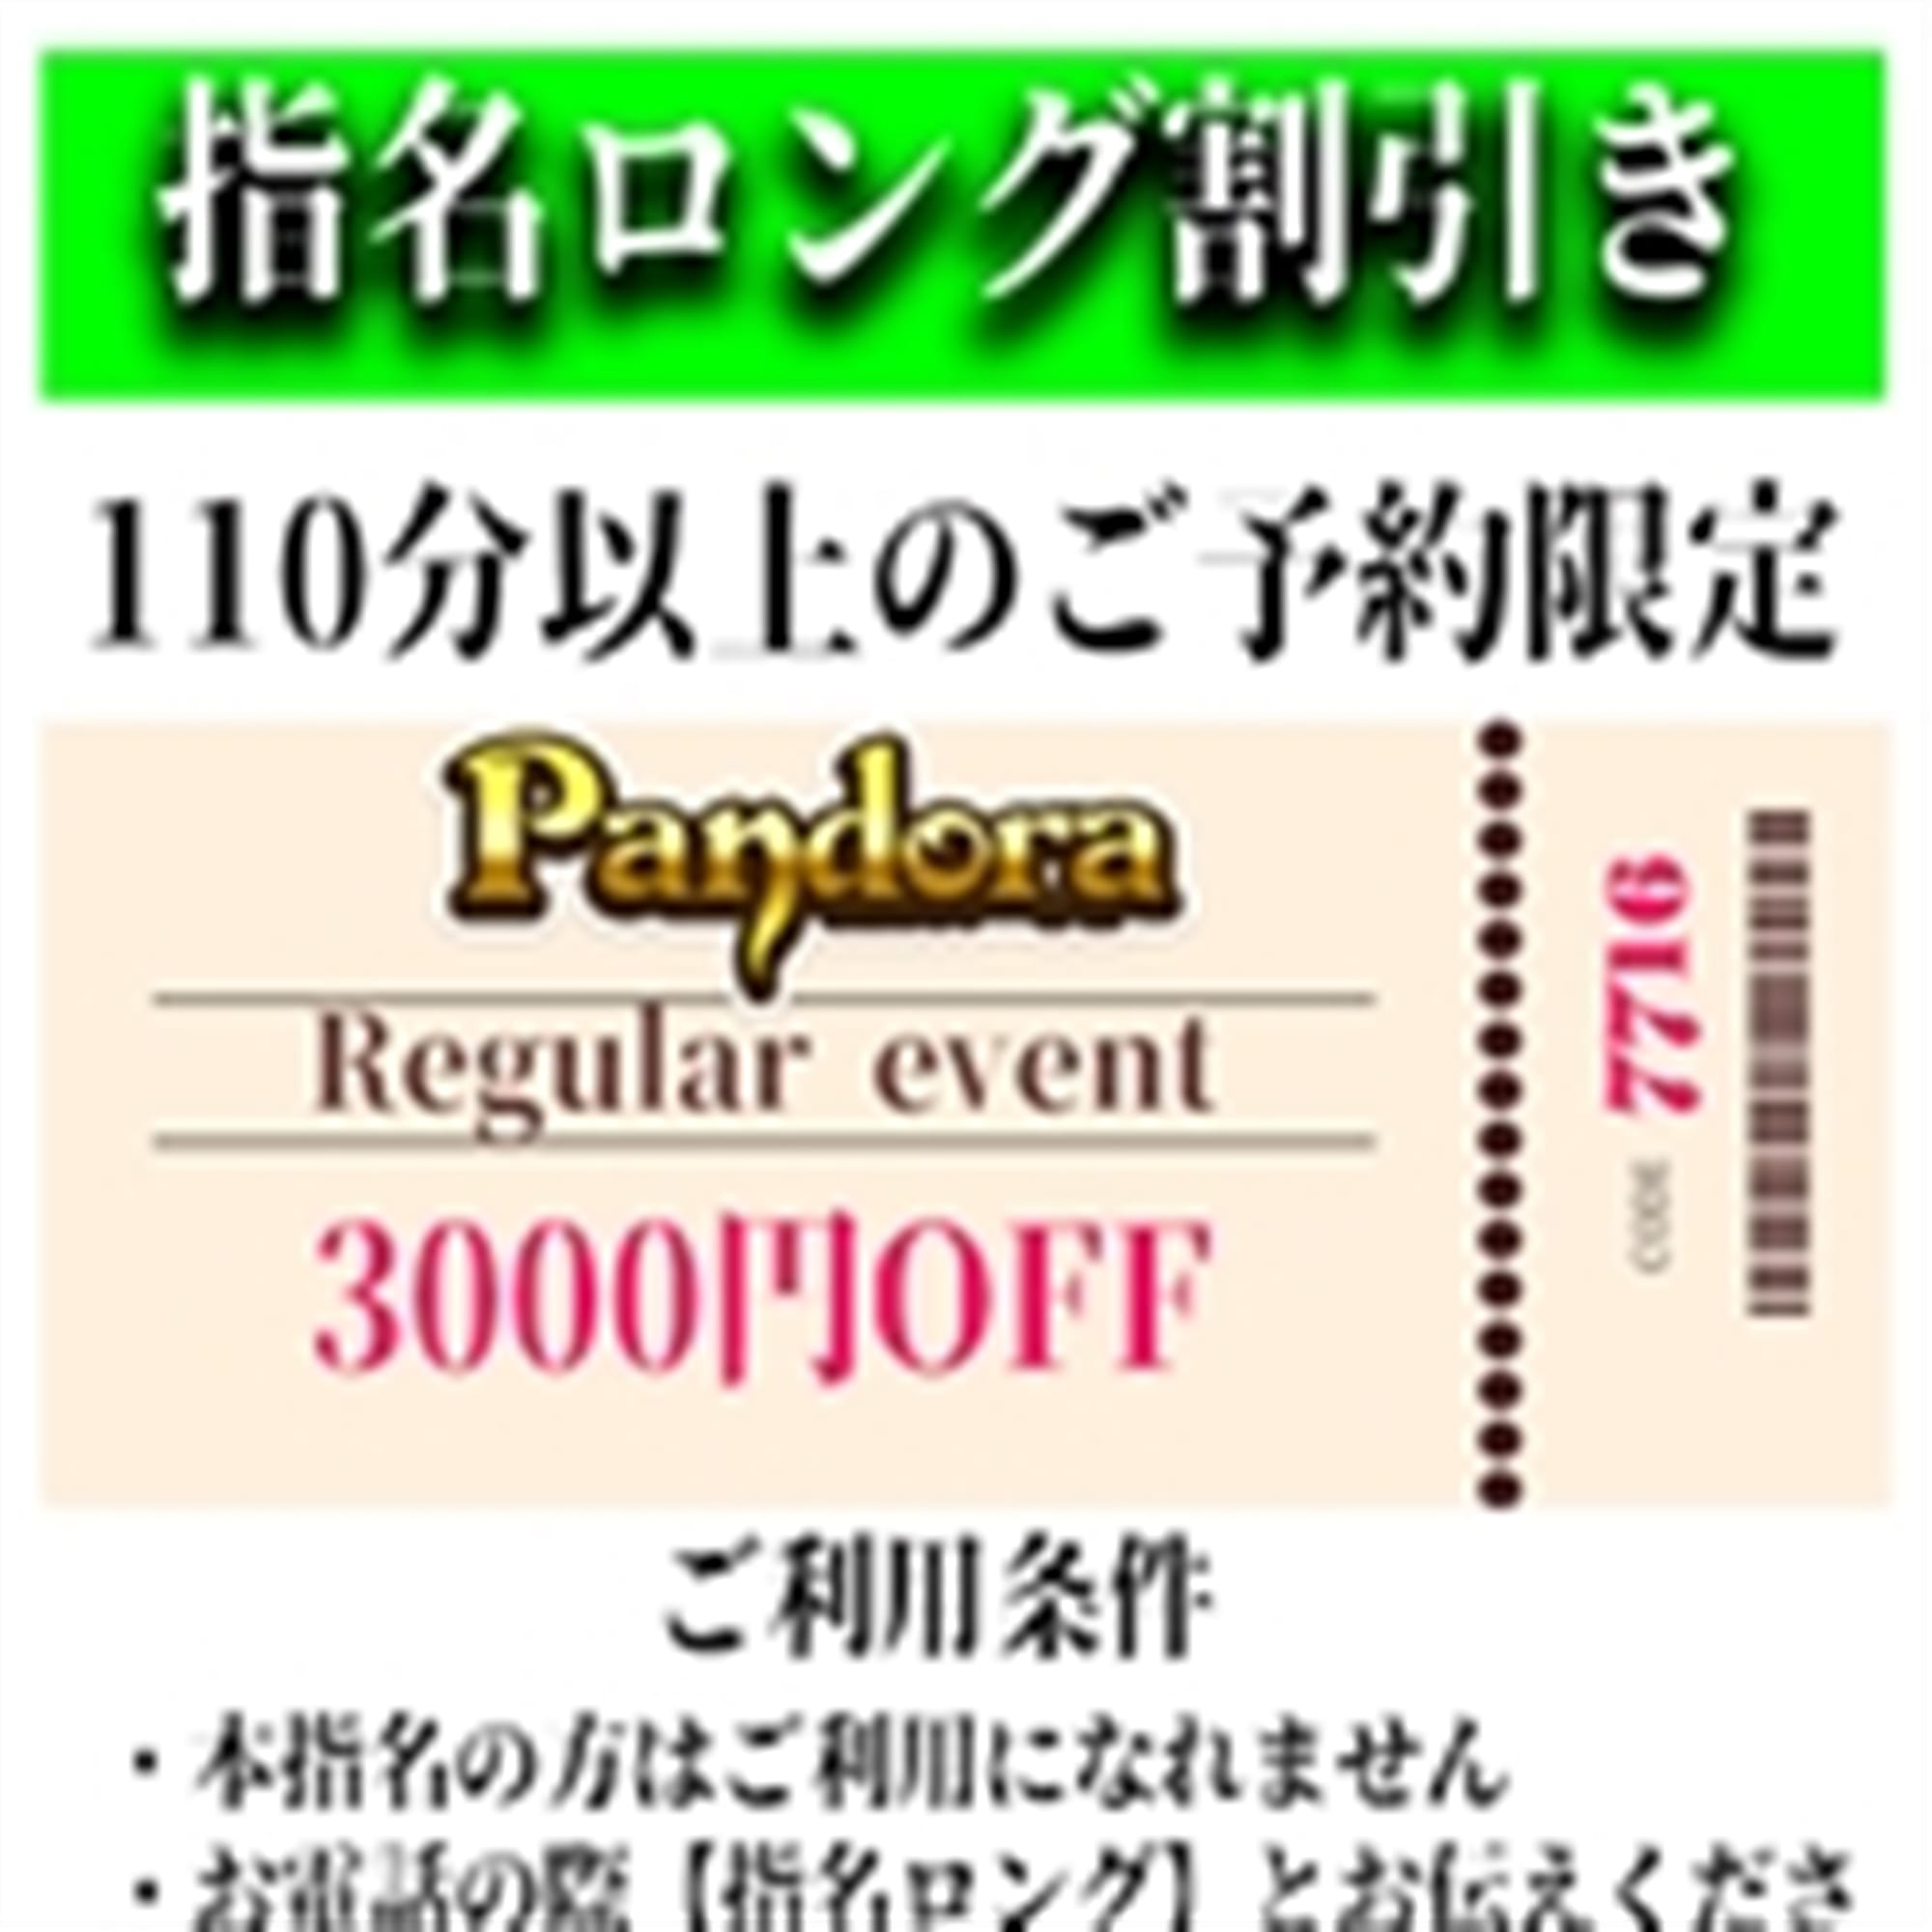 「ご指名のお客様も遊べるロングコース割引」04/23(火) 19:58 | Pandora(パンドラ)新潟のお得なニュース